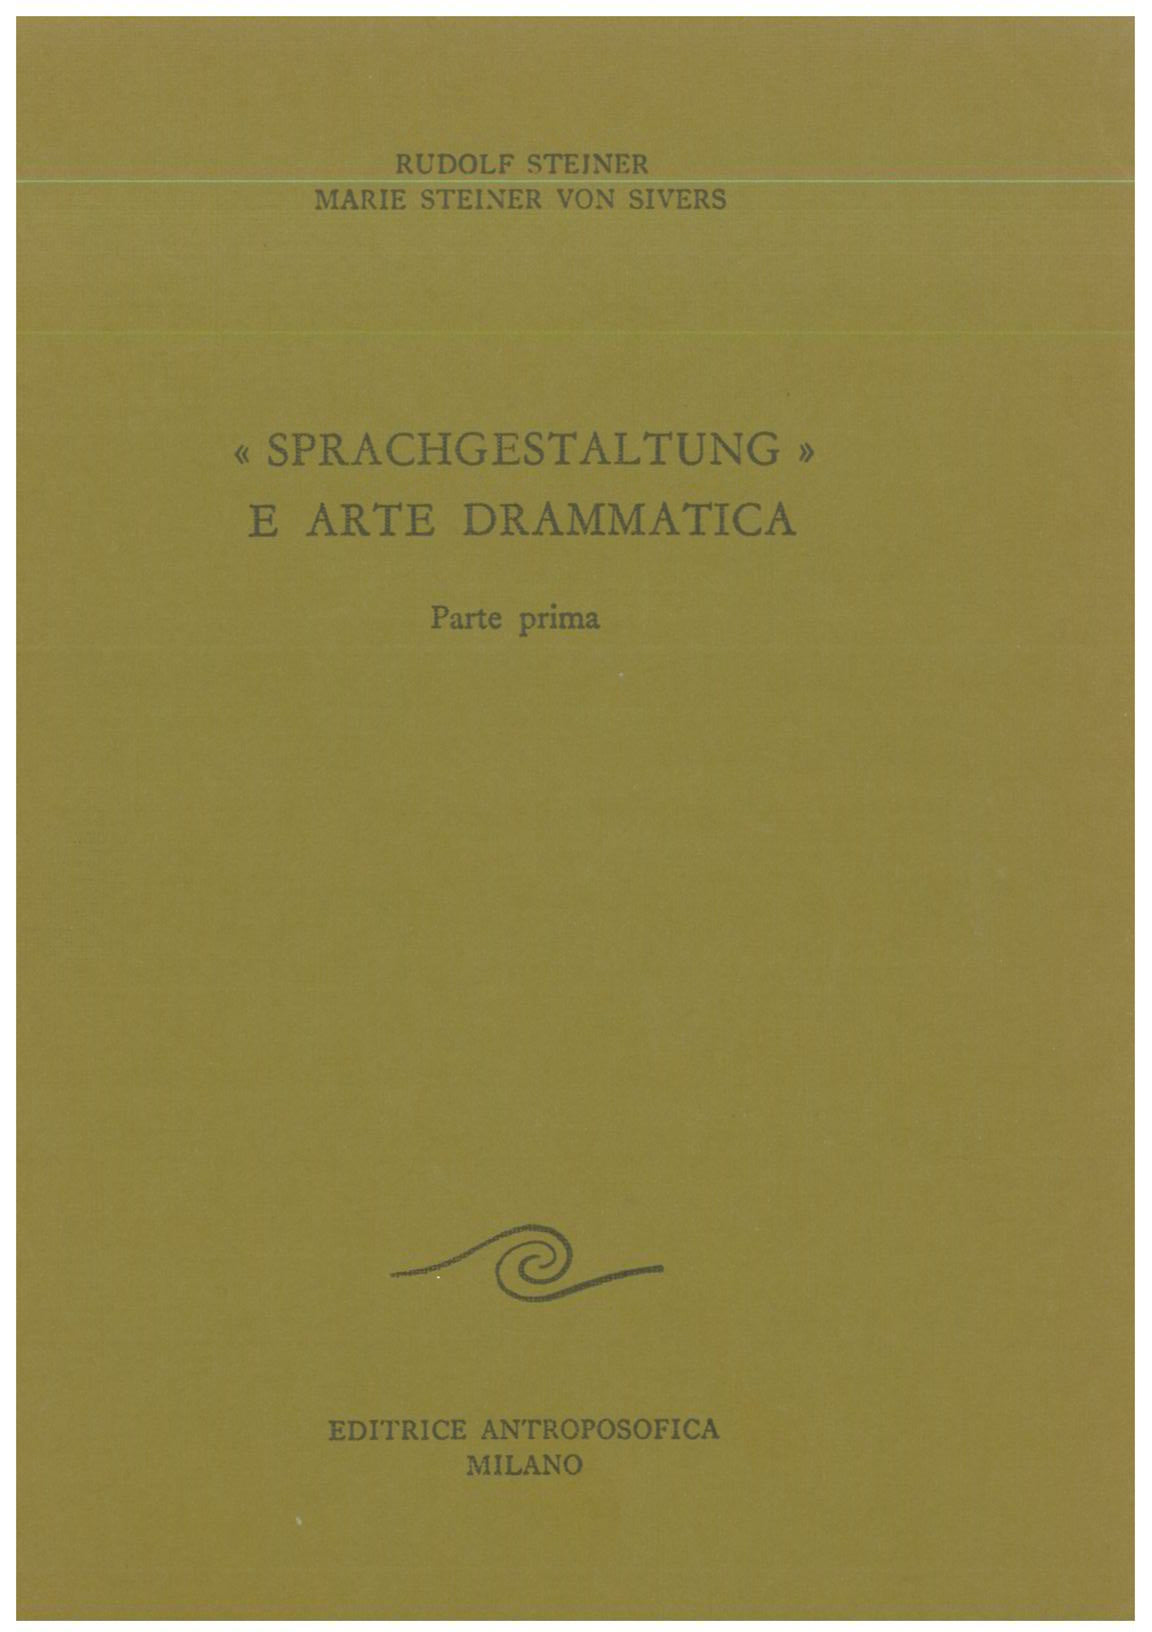 Sprachgestaltung e arte drammatica I - Rudolf Steiner